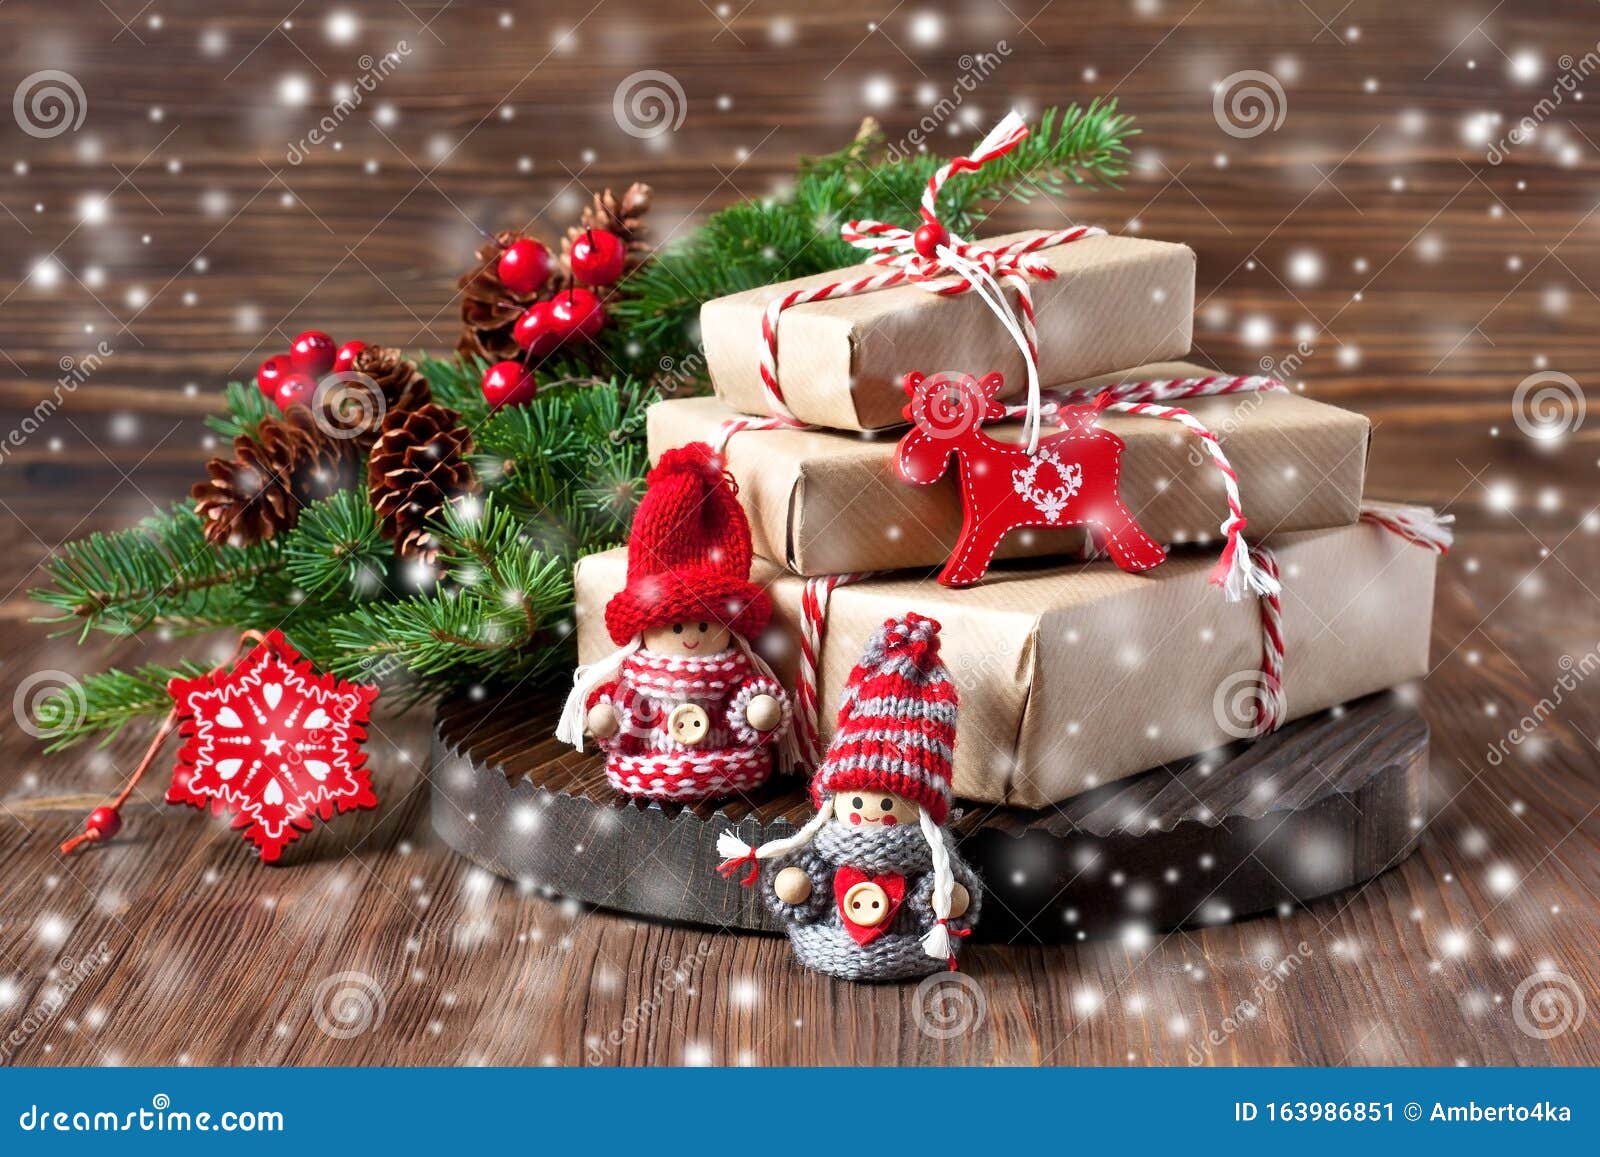 Tarjetas De Navidad Tarjetas de felicitación de vacaciones Pop Up Regalos Navidad/año nuevo tarjetas de felicitación 